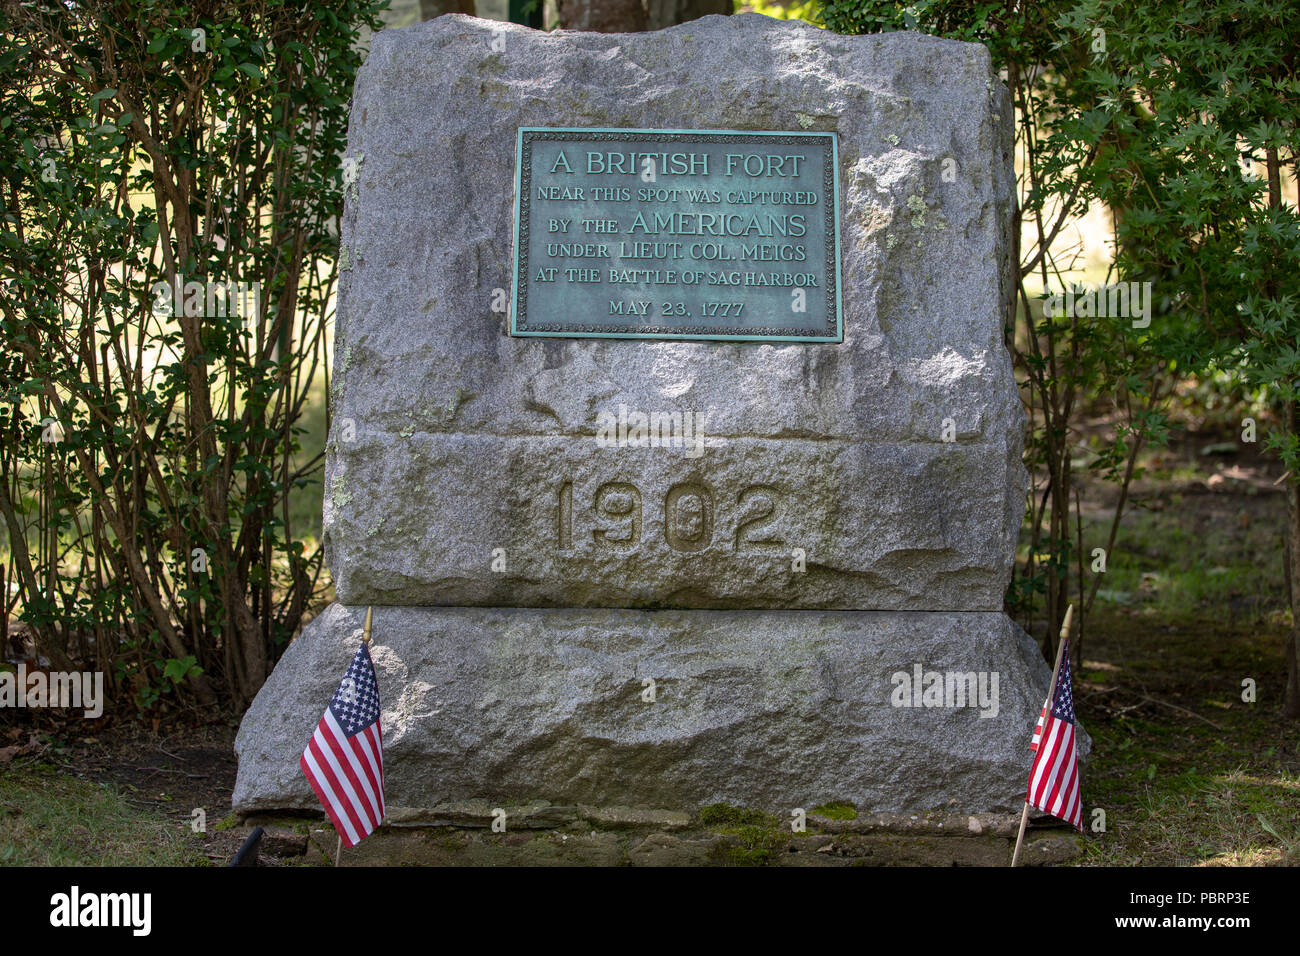 Denkmal von 1902 für einen britischen Fort in der Nähe dieser Stelle wurde von den Amerikanern im Rahmen Lieut erfasst. Oberst Meigs in der Schlacht von Sag Harbour, 23. Mai 1777. Stockfoto